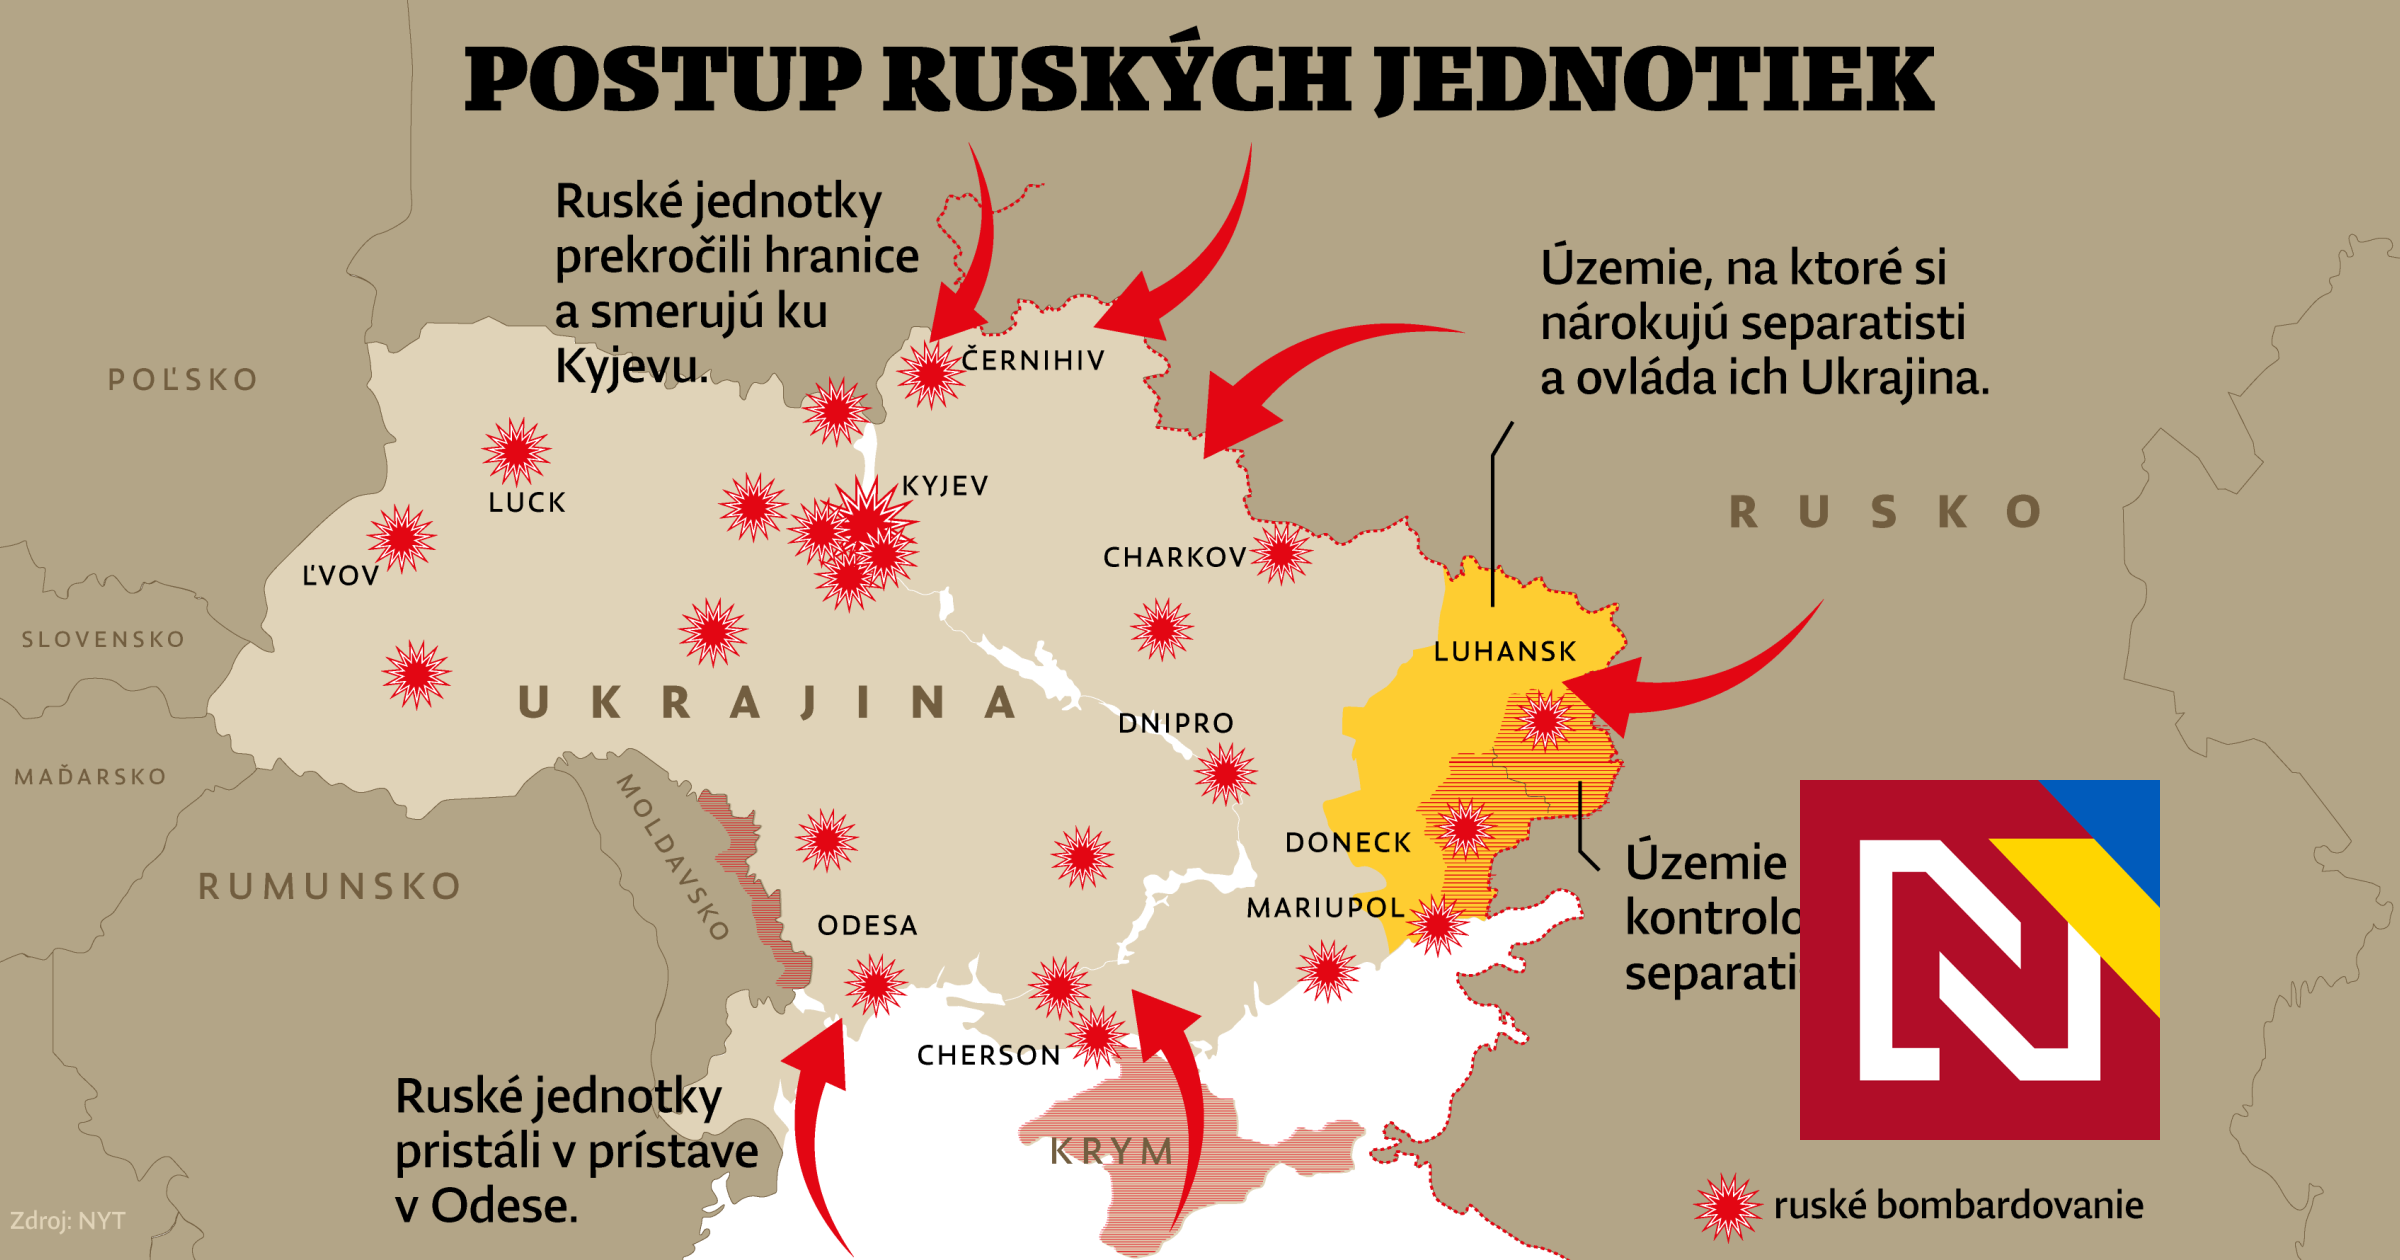 Według Zachodu Kijów może upaść w ciągu kilku godzin, Zełenski ogłosił powszechną mobilizację”.